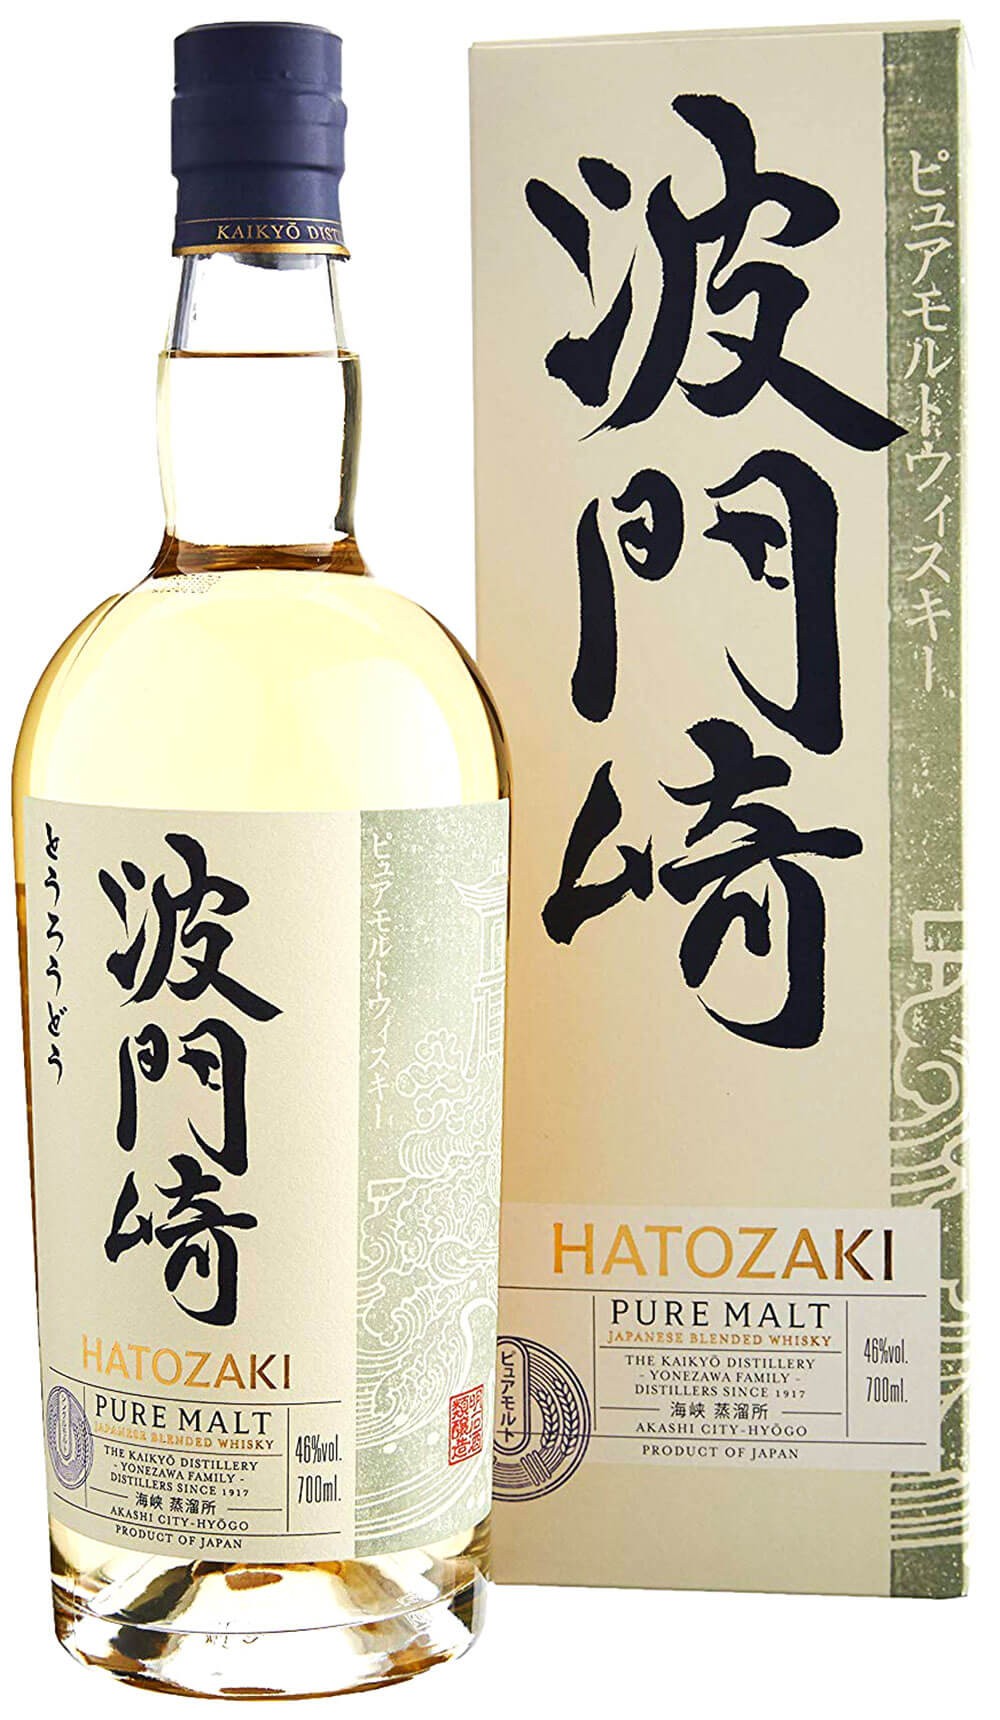 whisky kaikyo hatozaki malt cl.70 with case